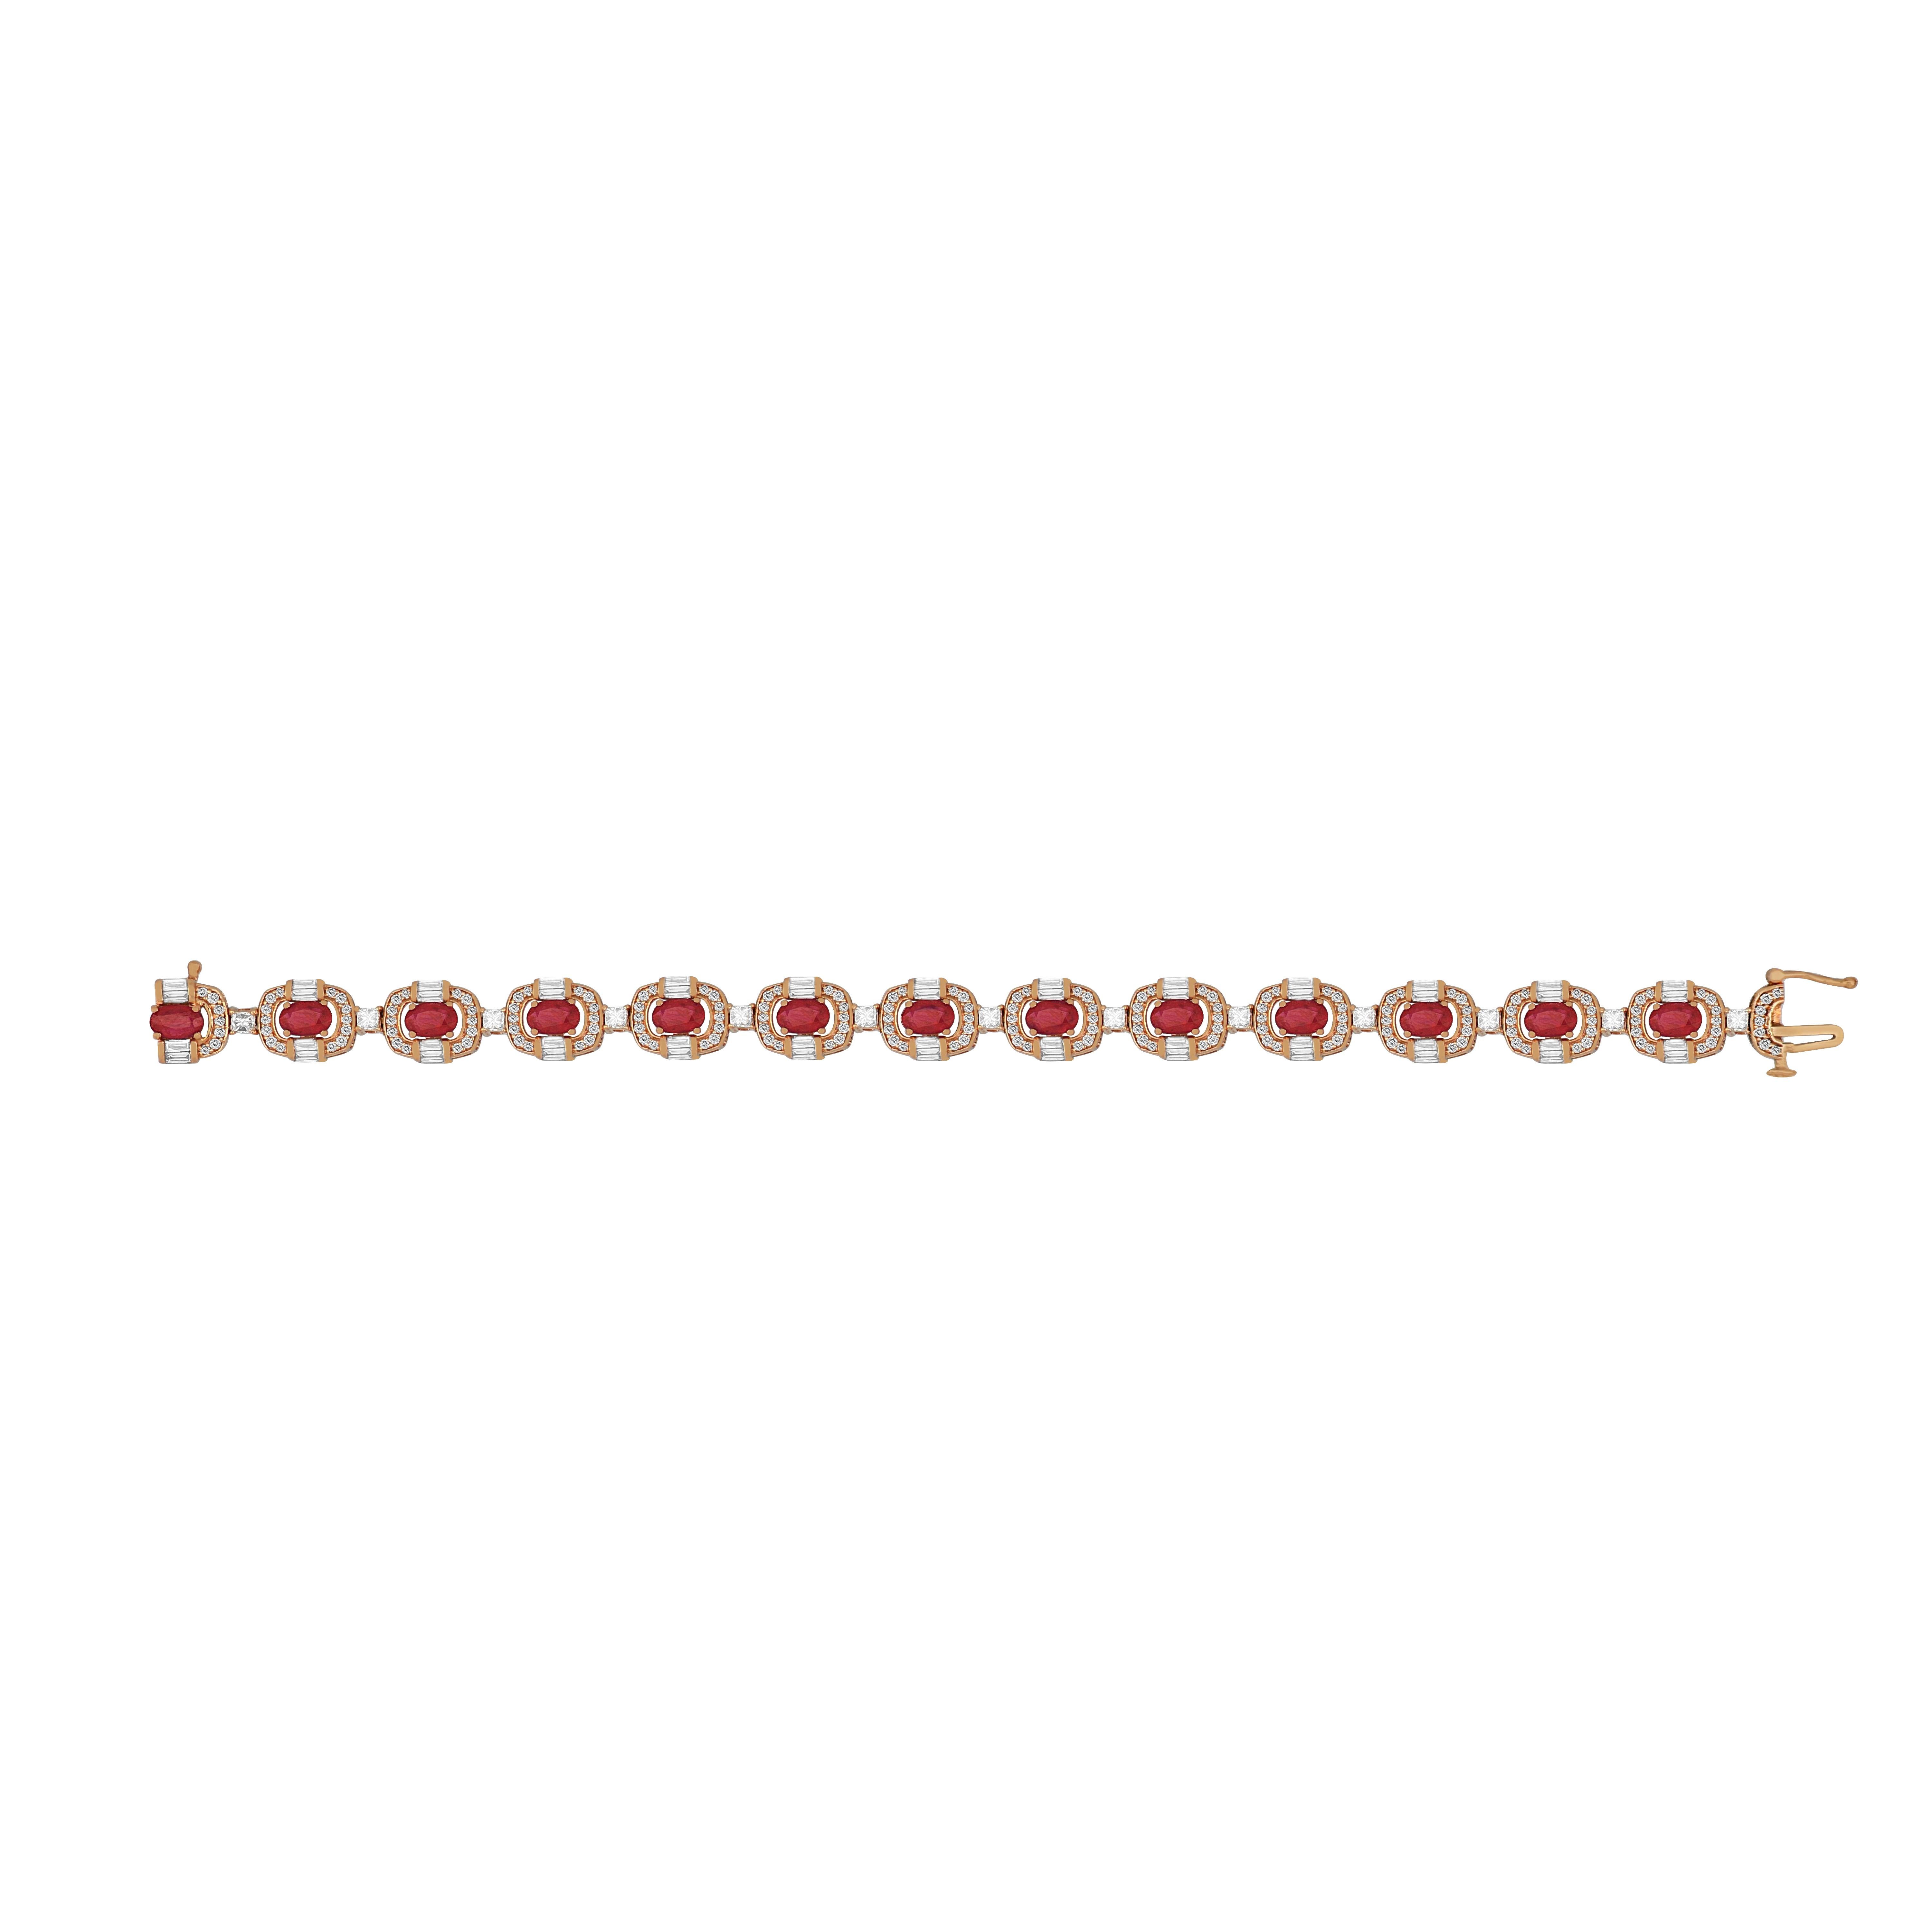 Cet élégant bracelet en or rose 18 carats de la marque Amwaj Jewellery garantit un scintillement délicat en toute occasion. Les diamants ronds, baguettes et princesses sont accompagnés d'un ensemble de rubis ronds.

Poids : 24.300 g 
Diamant : 2.800